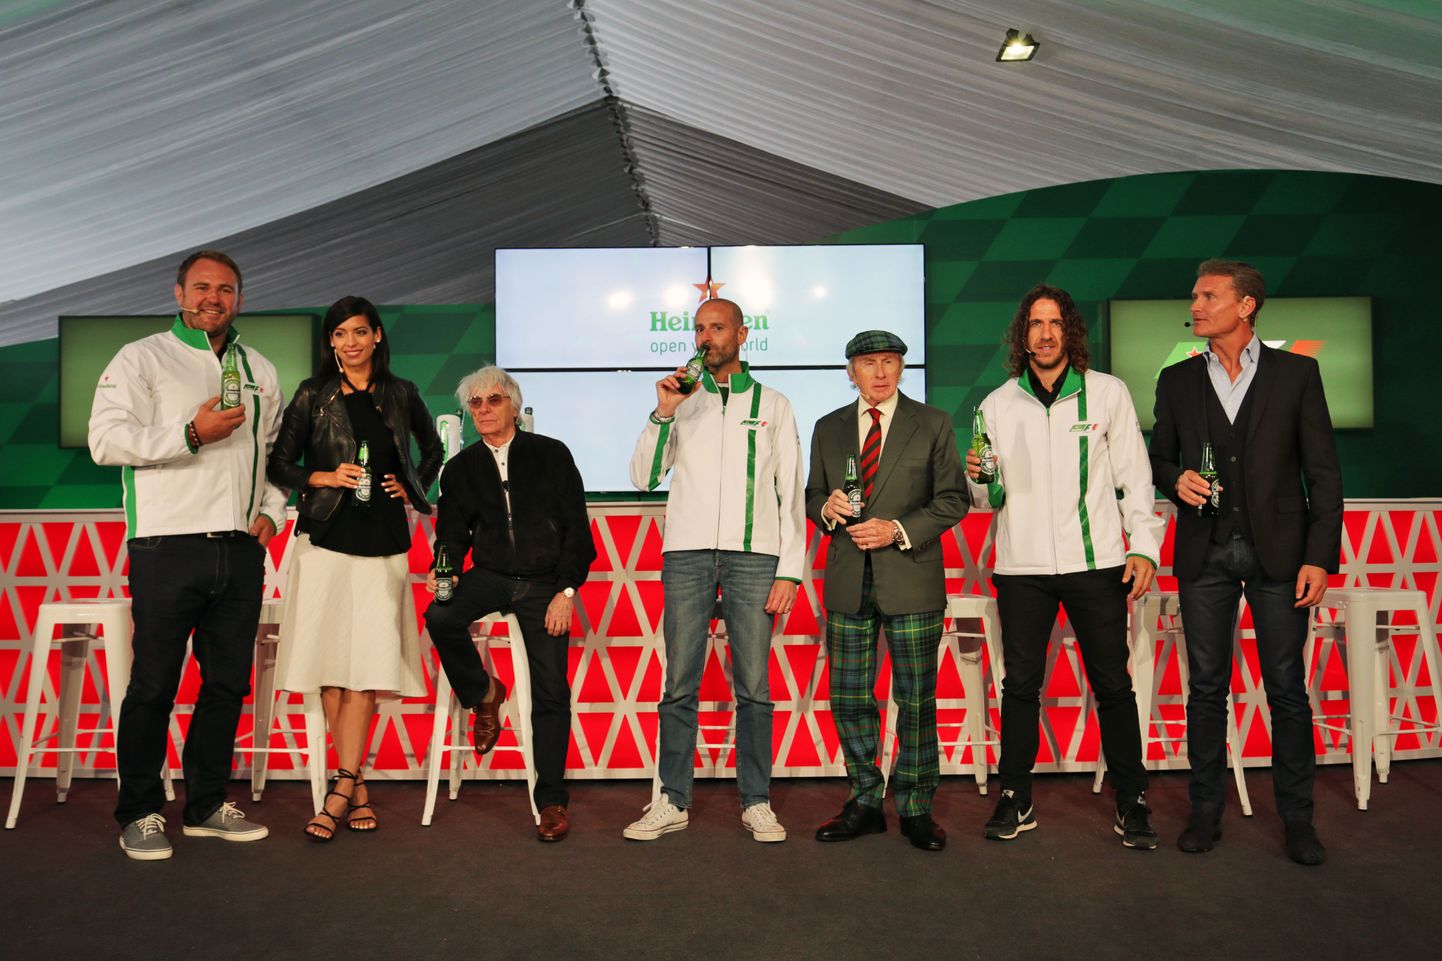 Vormel-1 ja Heineken uut sponsorlussuhet tutvustamas.